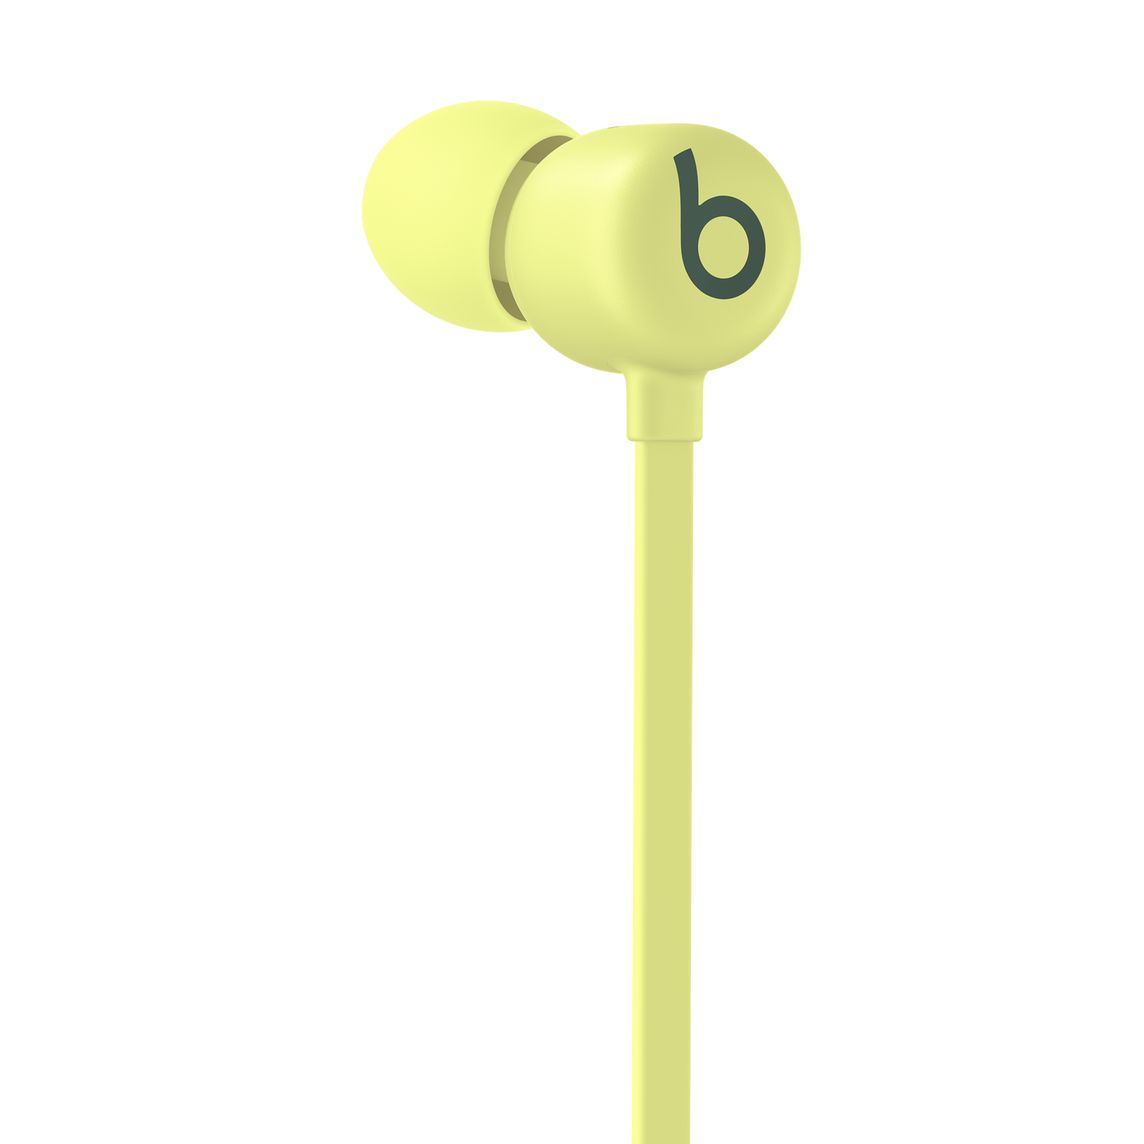  - Audifono In Ear Wireless Flex Beats / Amarillo 3